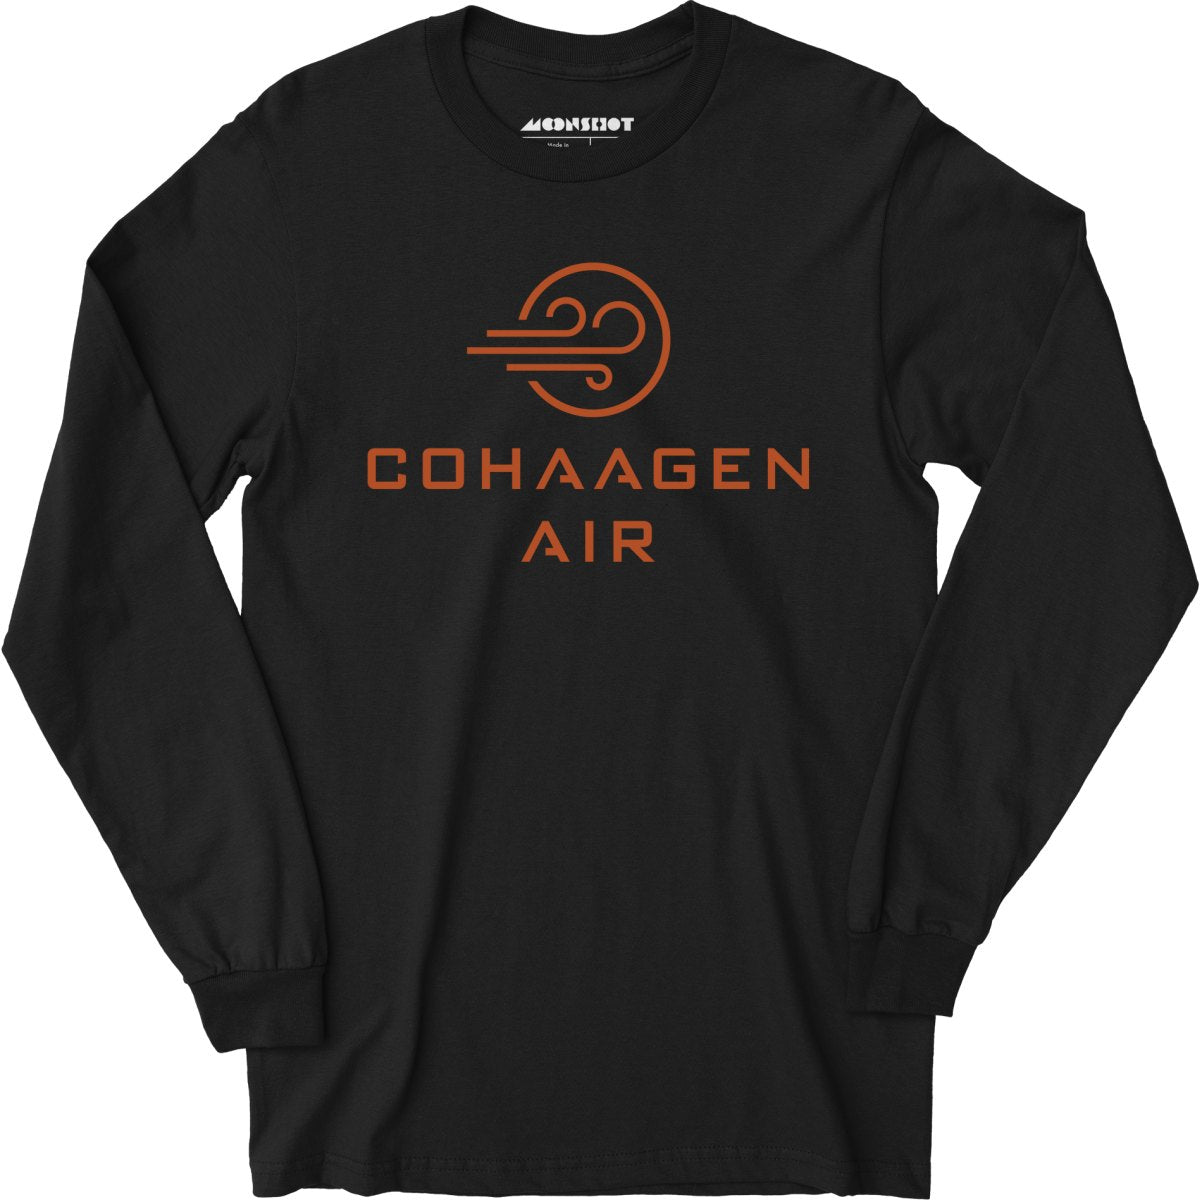 Cohaagen Air - Total Recall - Long Sleeve T-Shirt